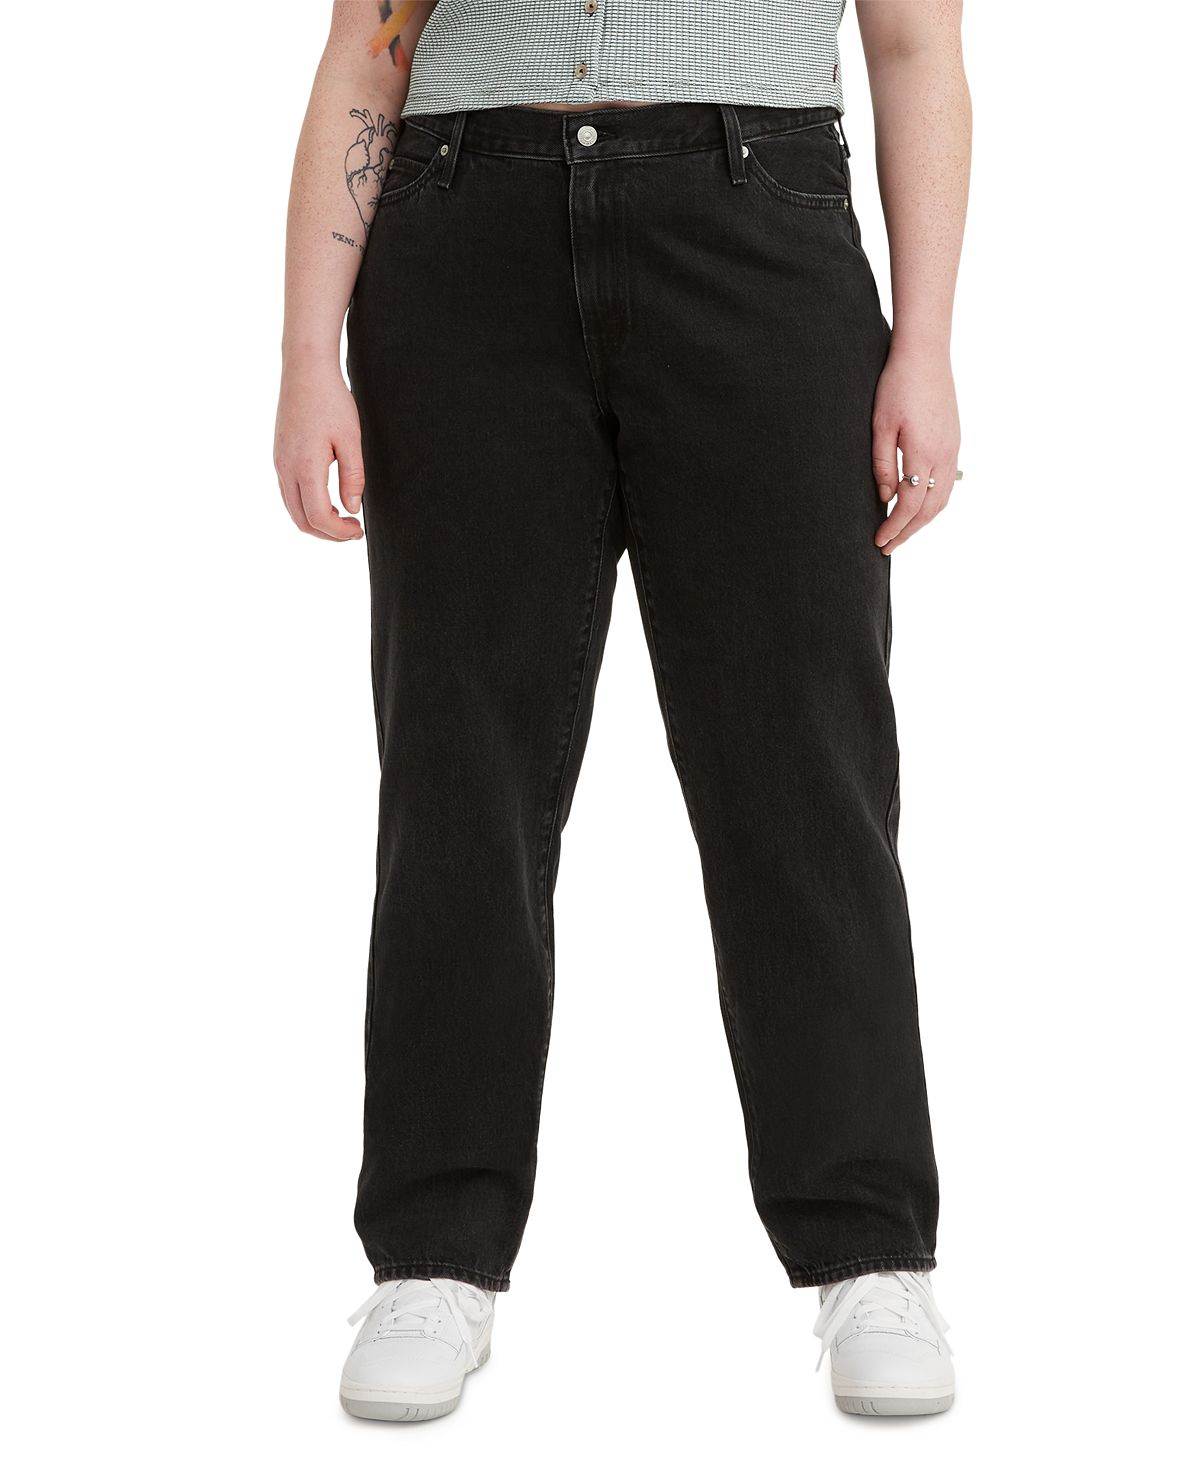 Модные женские мешковатые джинсы больших размеров 94-го года Levi's